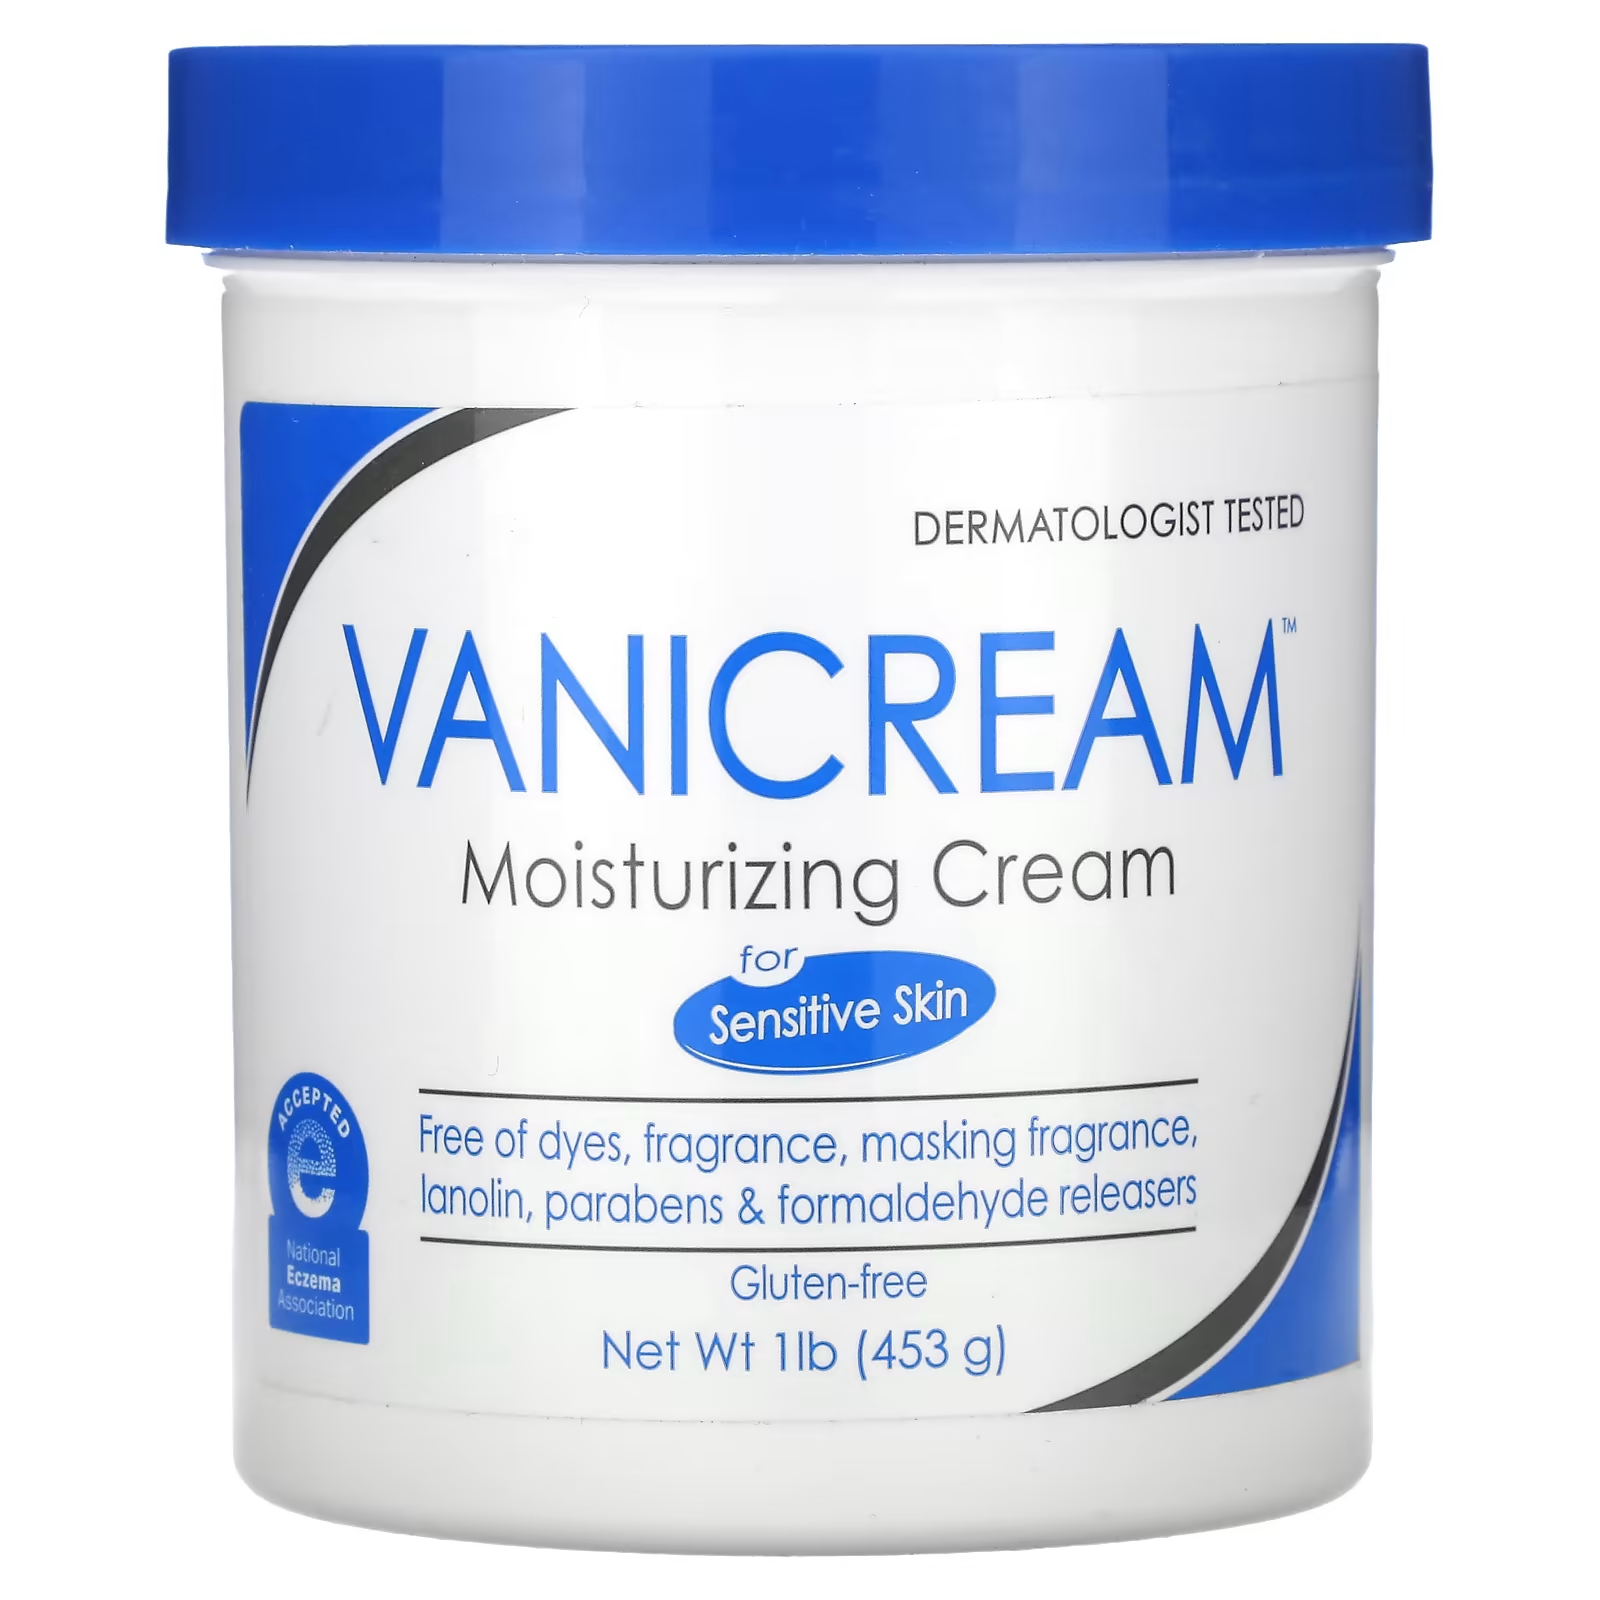 Увлажняющий крем Vanicream для сухой, раздраженной или чувствительной кожи, 1 фунт (453 г)